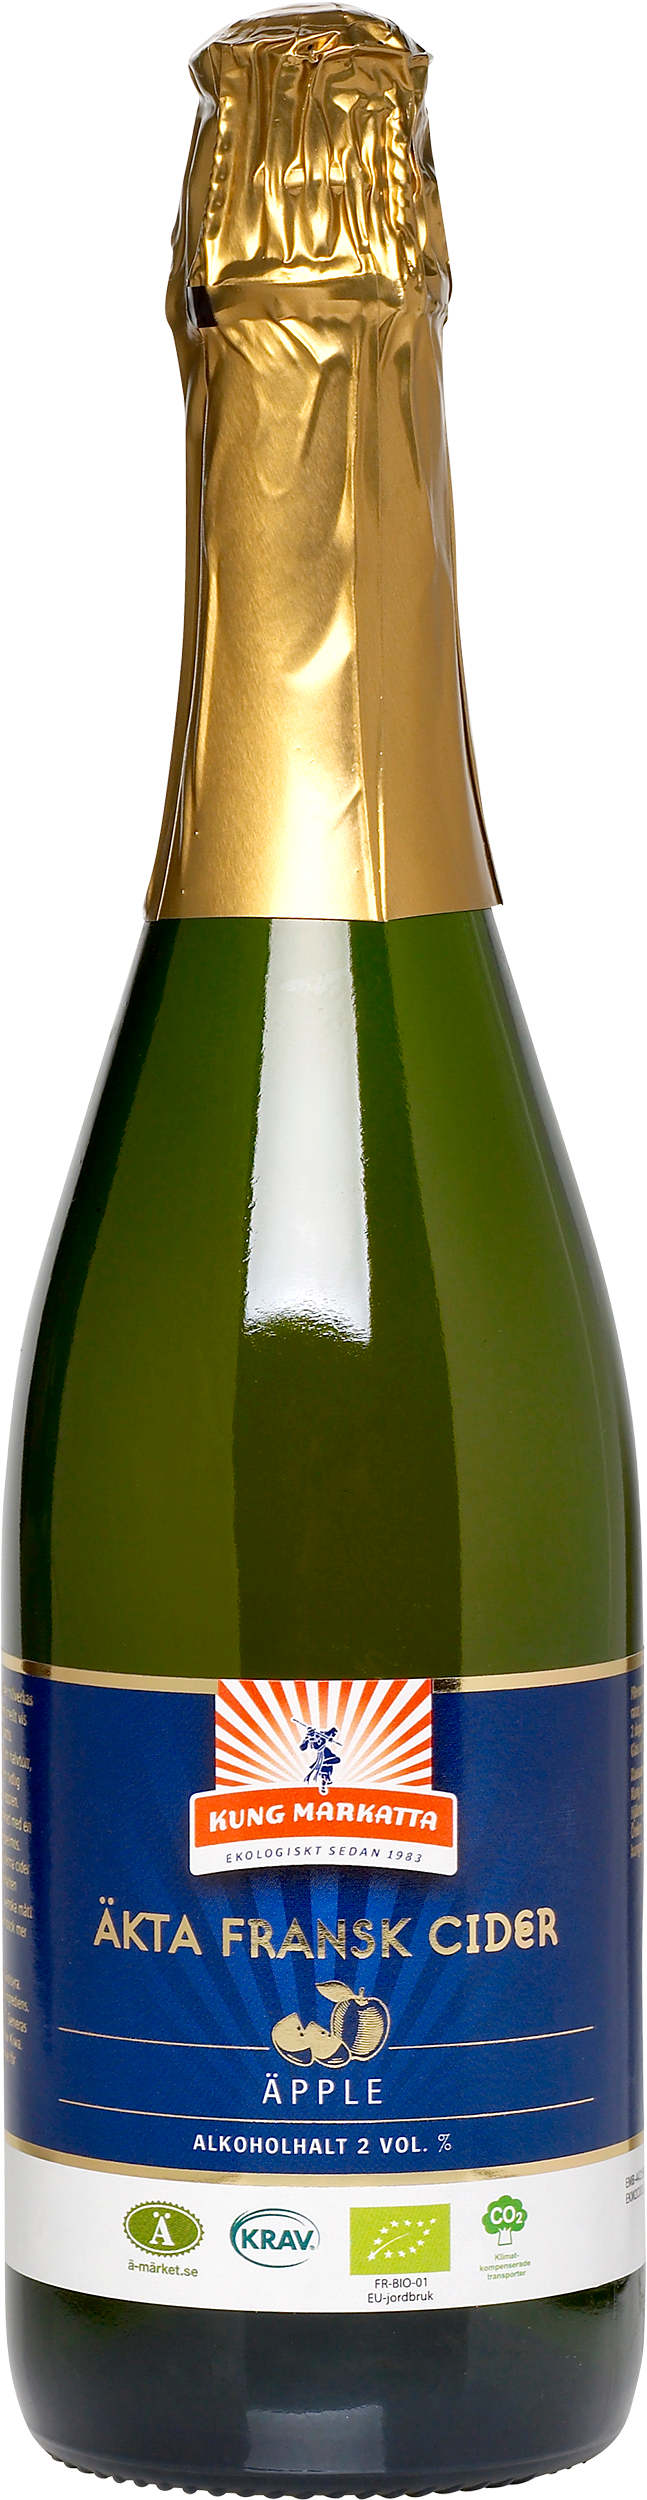 Kung Markatta Äkta Fransk Cider 2 %, 750 ml